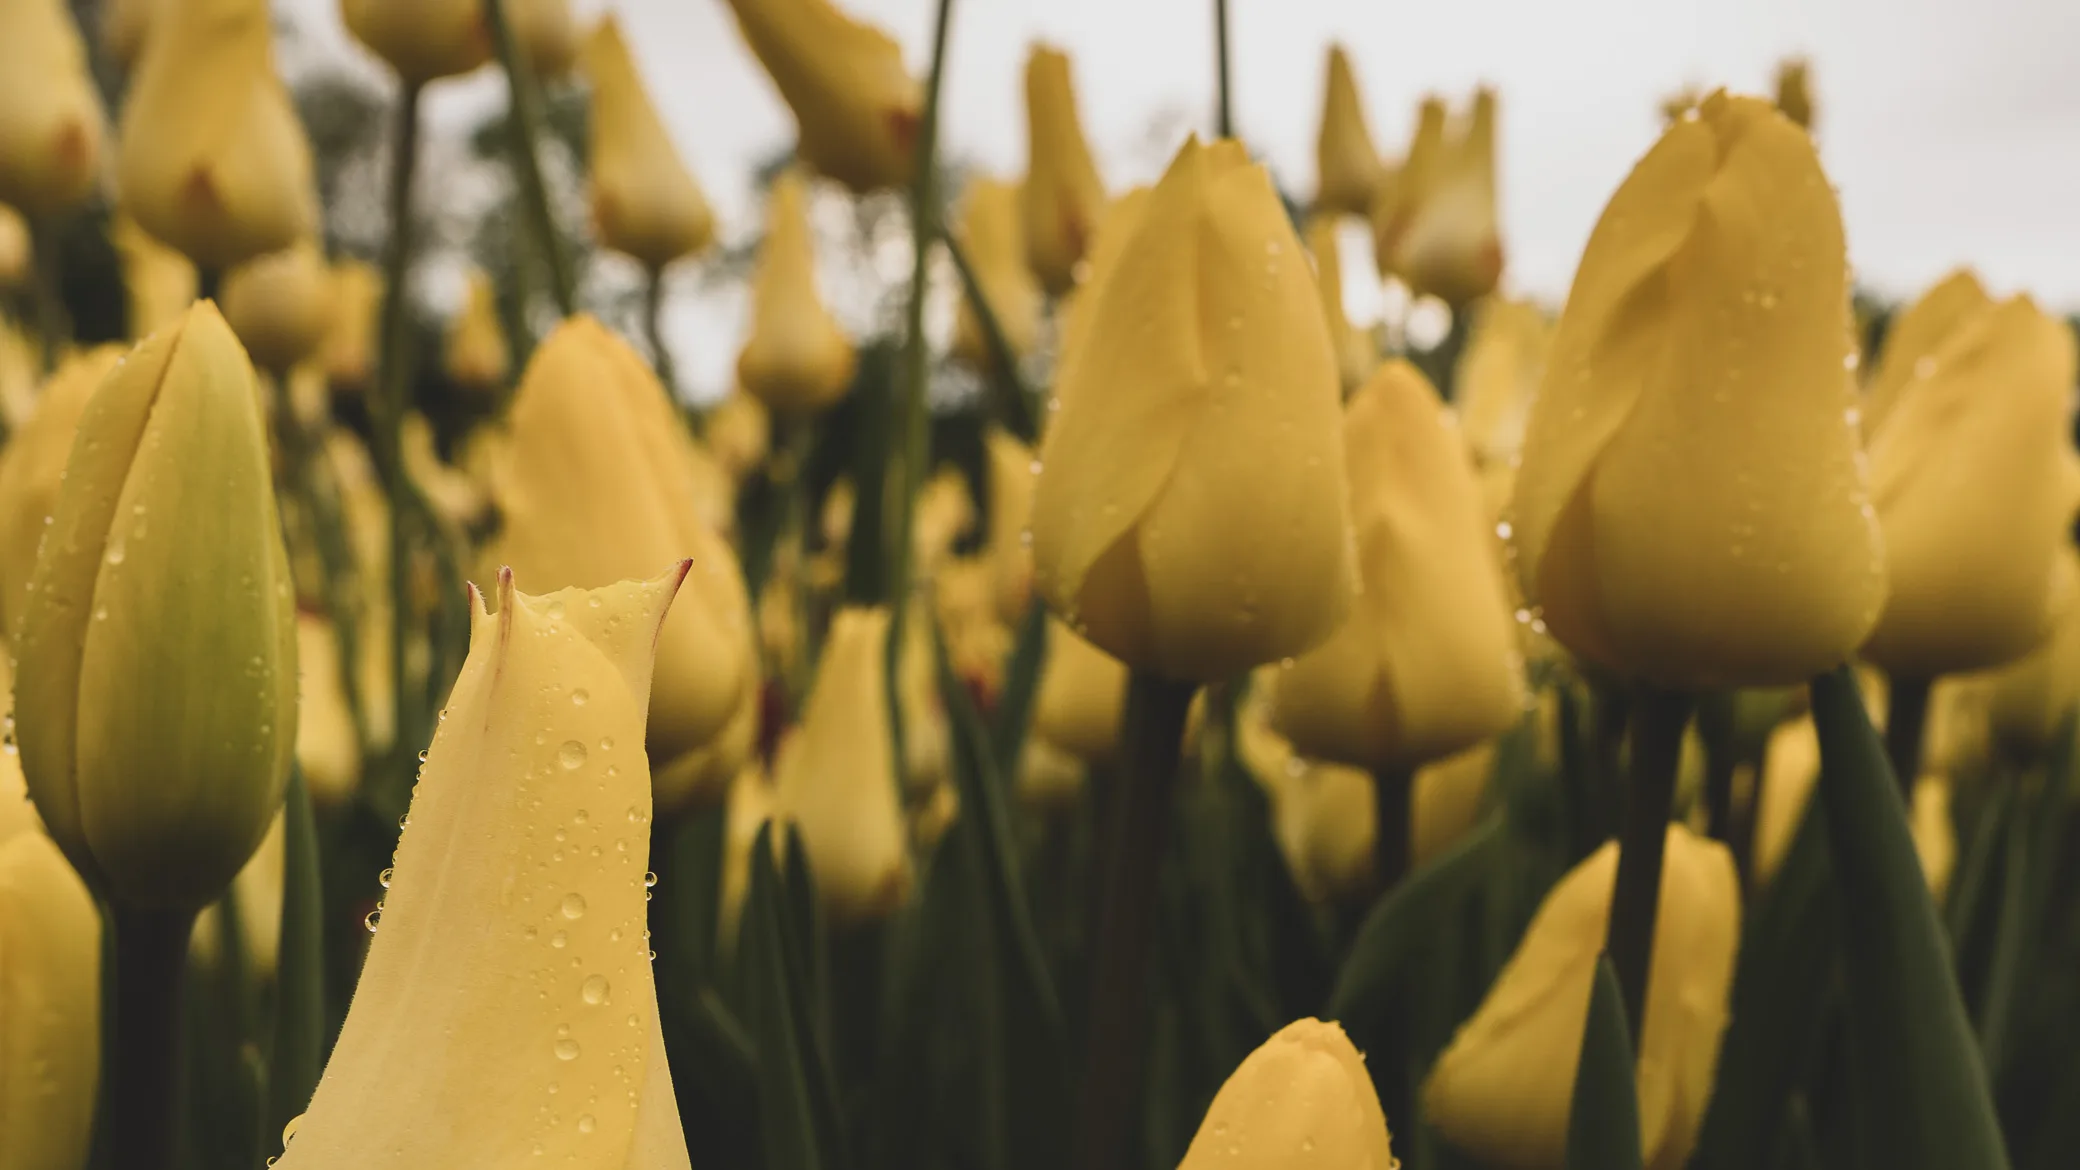 yellow tulips from washington park tulip festival Albany